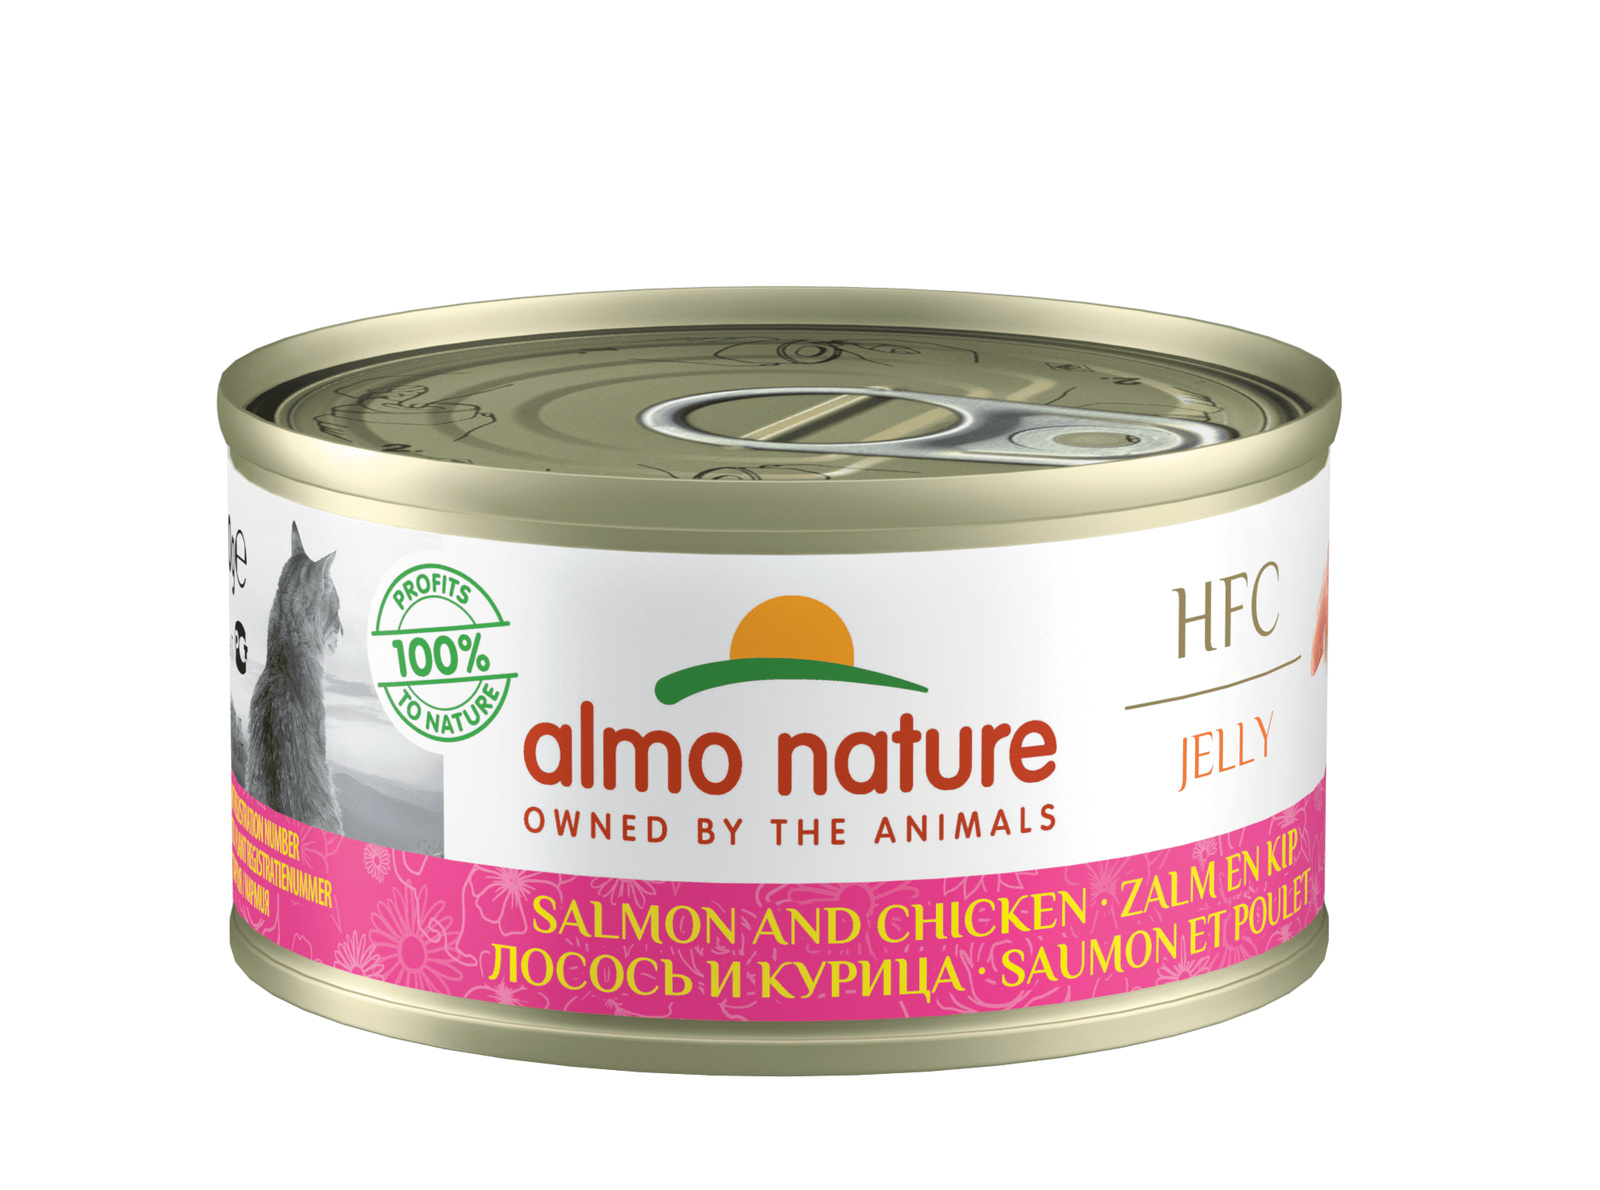 Almo Nature консервы Almo Nature консервы с лососем и курицей в желе для кошек (70 г) консервы для кошек almo nature legend с курицей и сыром 75% 70 г